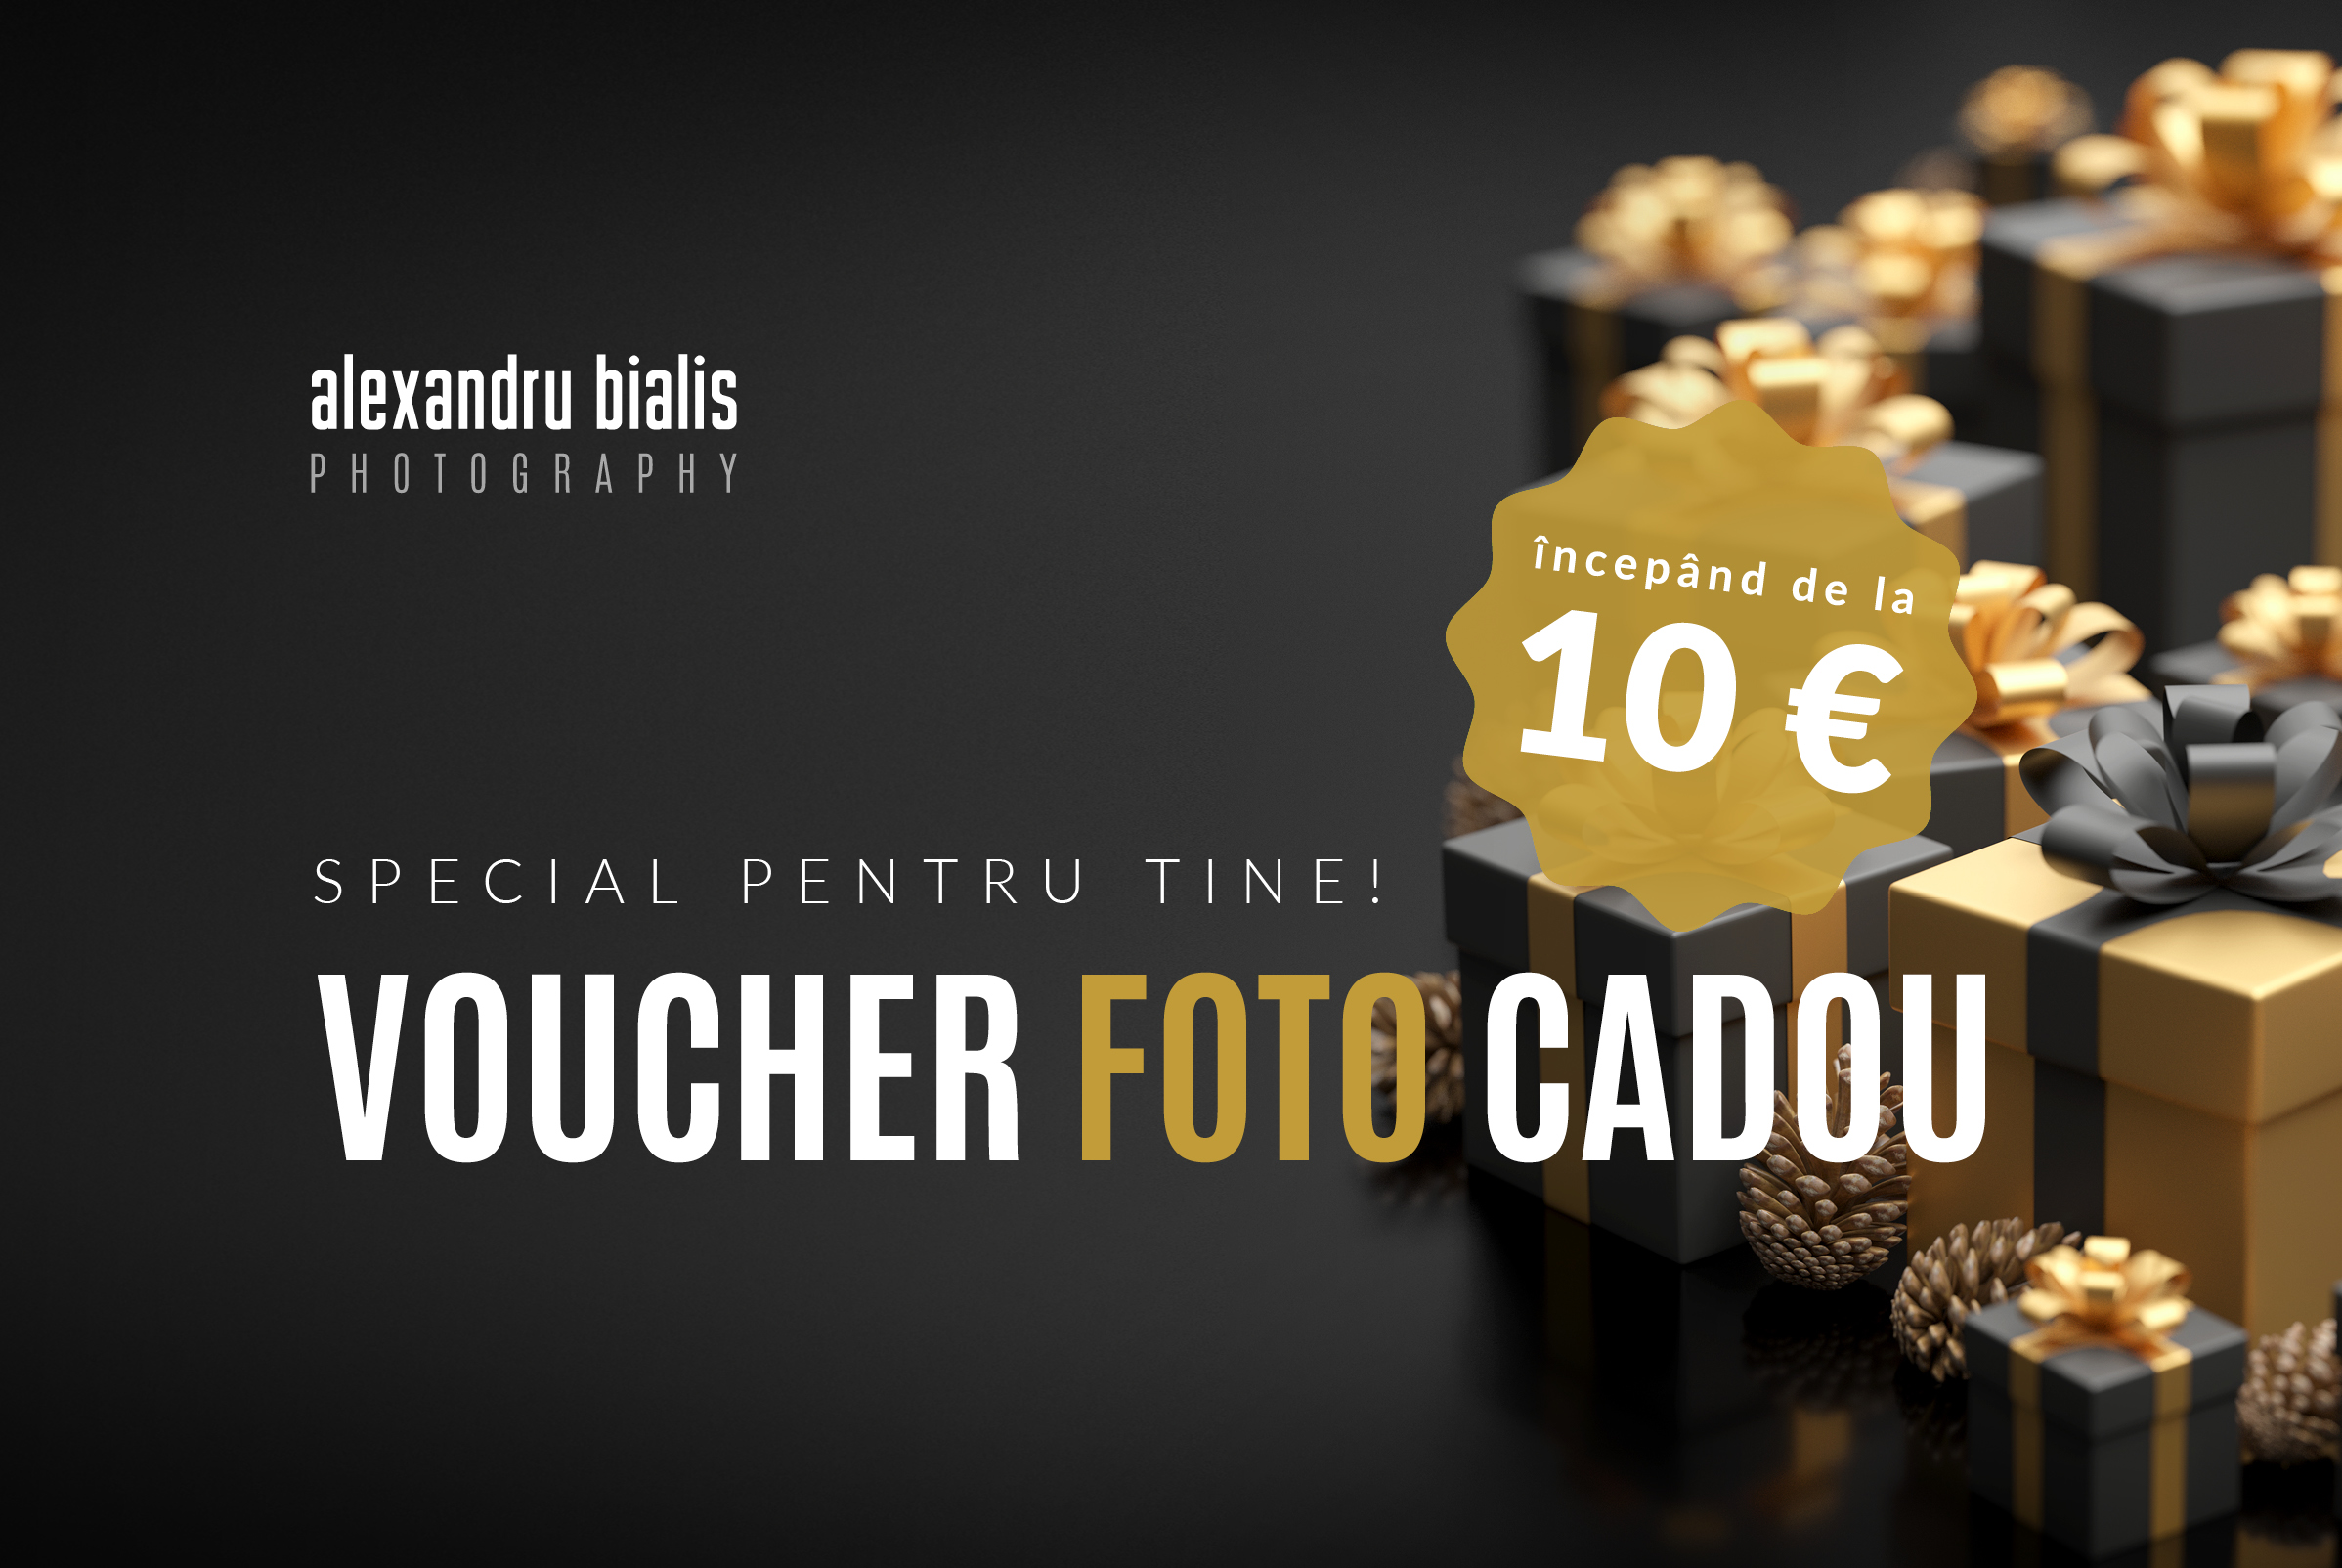 Voucher foto cadou, perfect pentru achiziţionarea de cursuri foto online şi alte servicii foto oferite de fotograful Alexandru Bialis